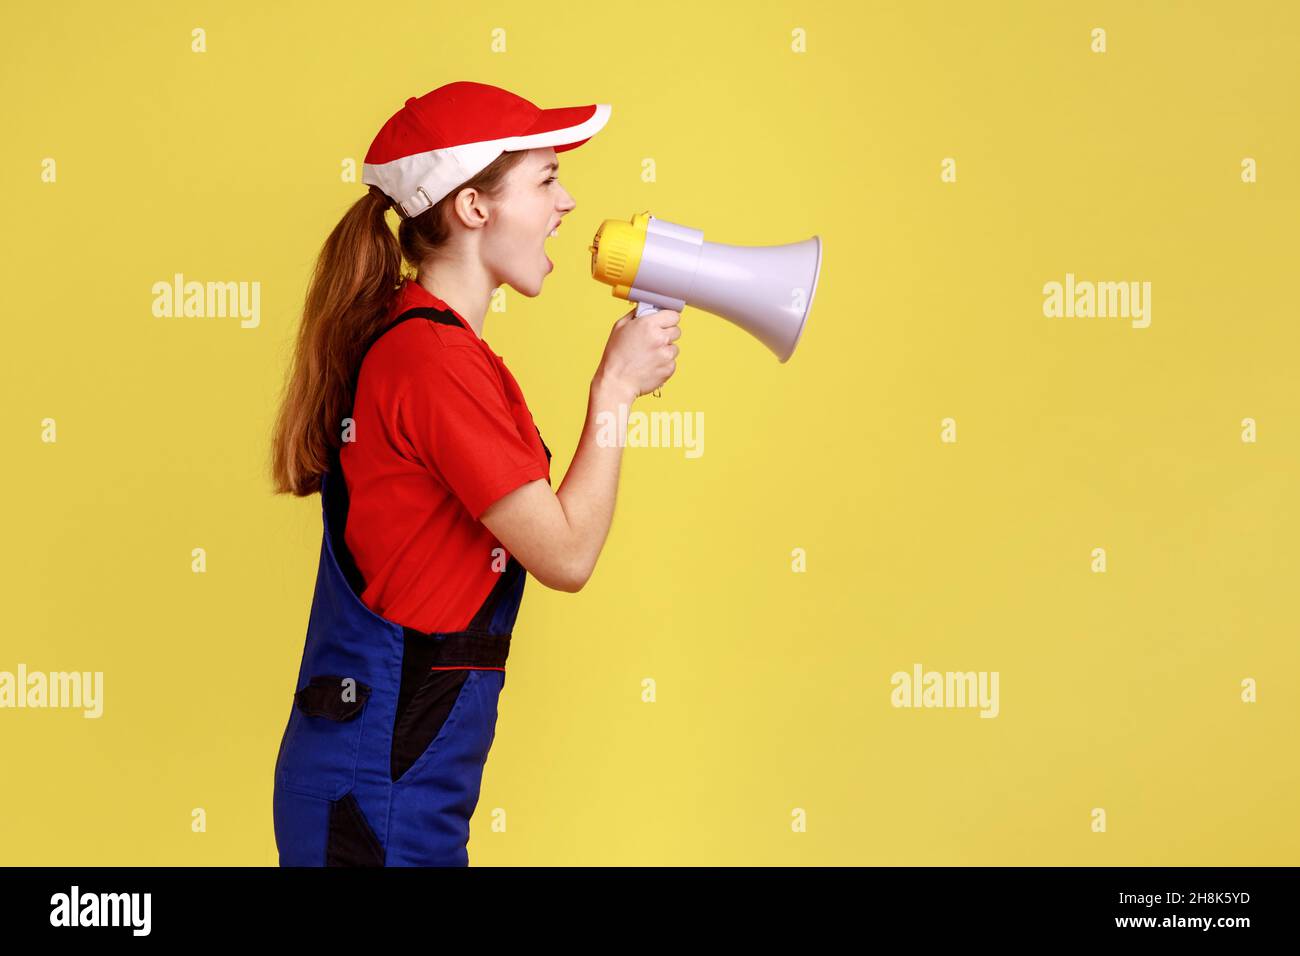 Seitenansicht Porträt einer wütenden Arbeiterin, die laut im Megaphon schreit, ihren unterstellten Bauherren Befehl gibt, Arbeitskleidung trägt und eine rote Mütze trägt. Innenaufnahme des Studios isoliert auf gelbem Hintergrund. Stockfoto